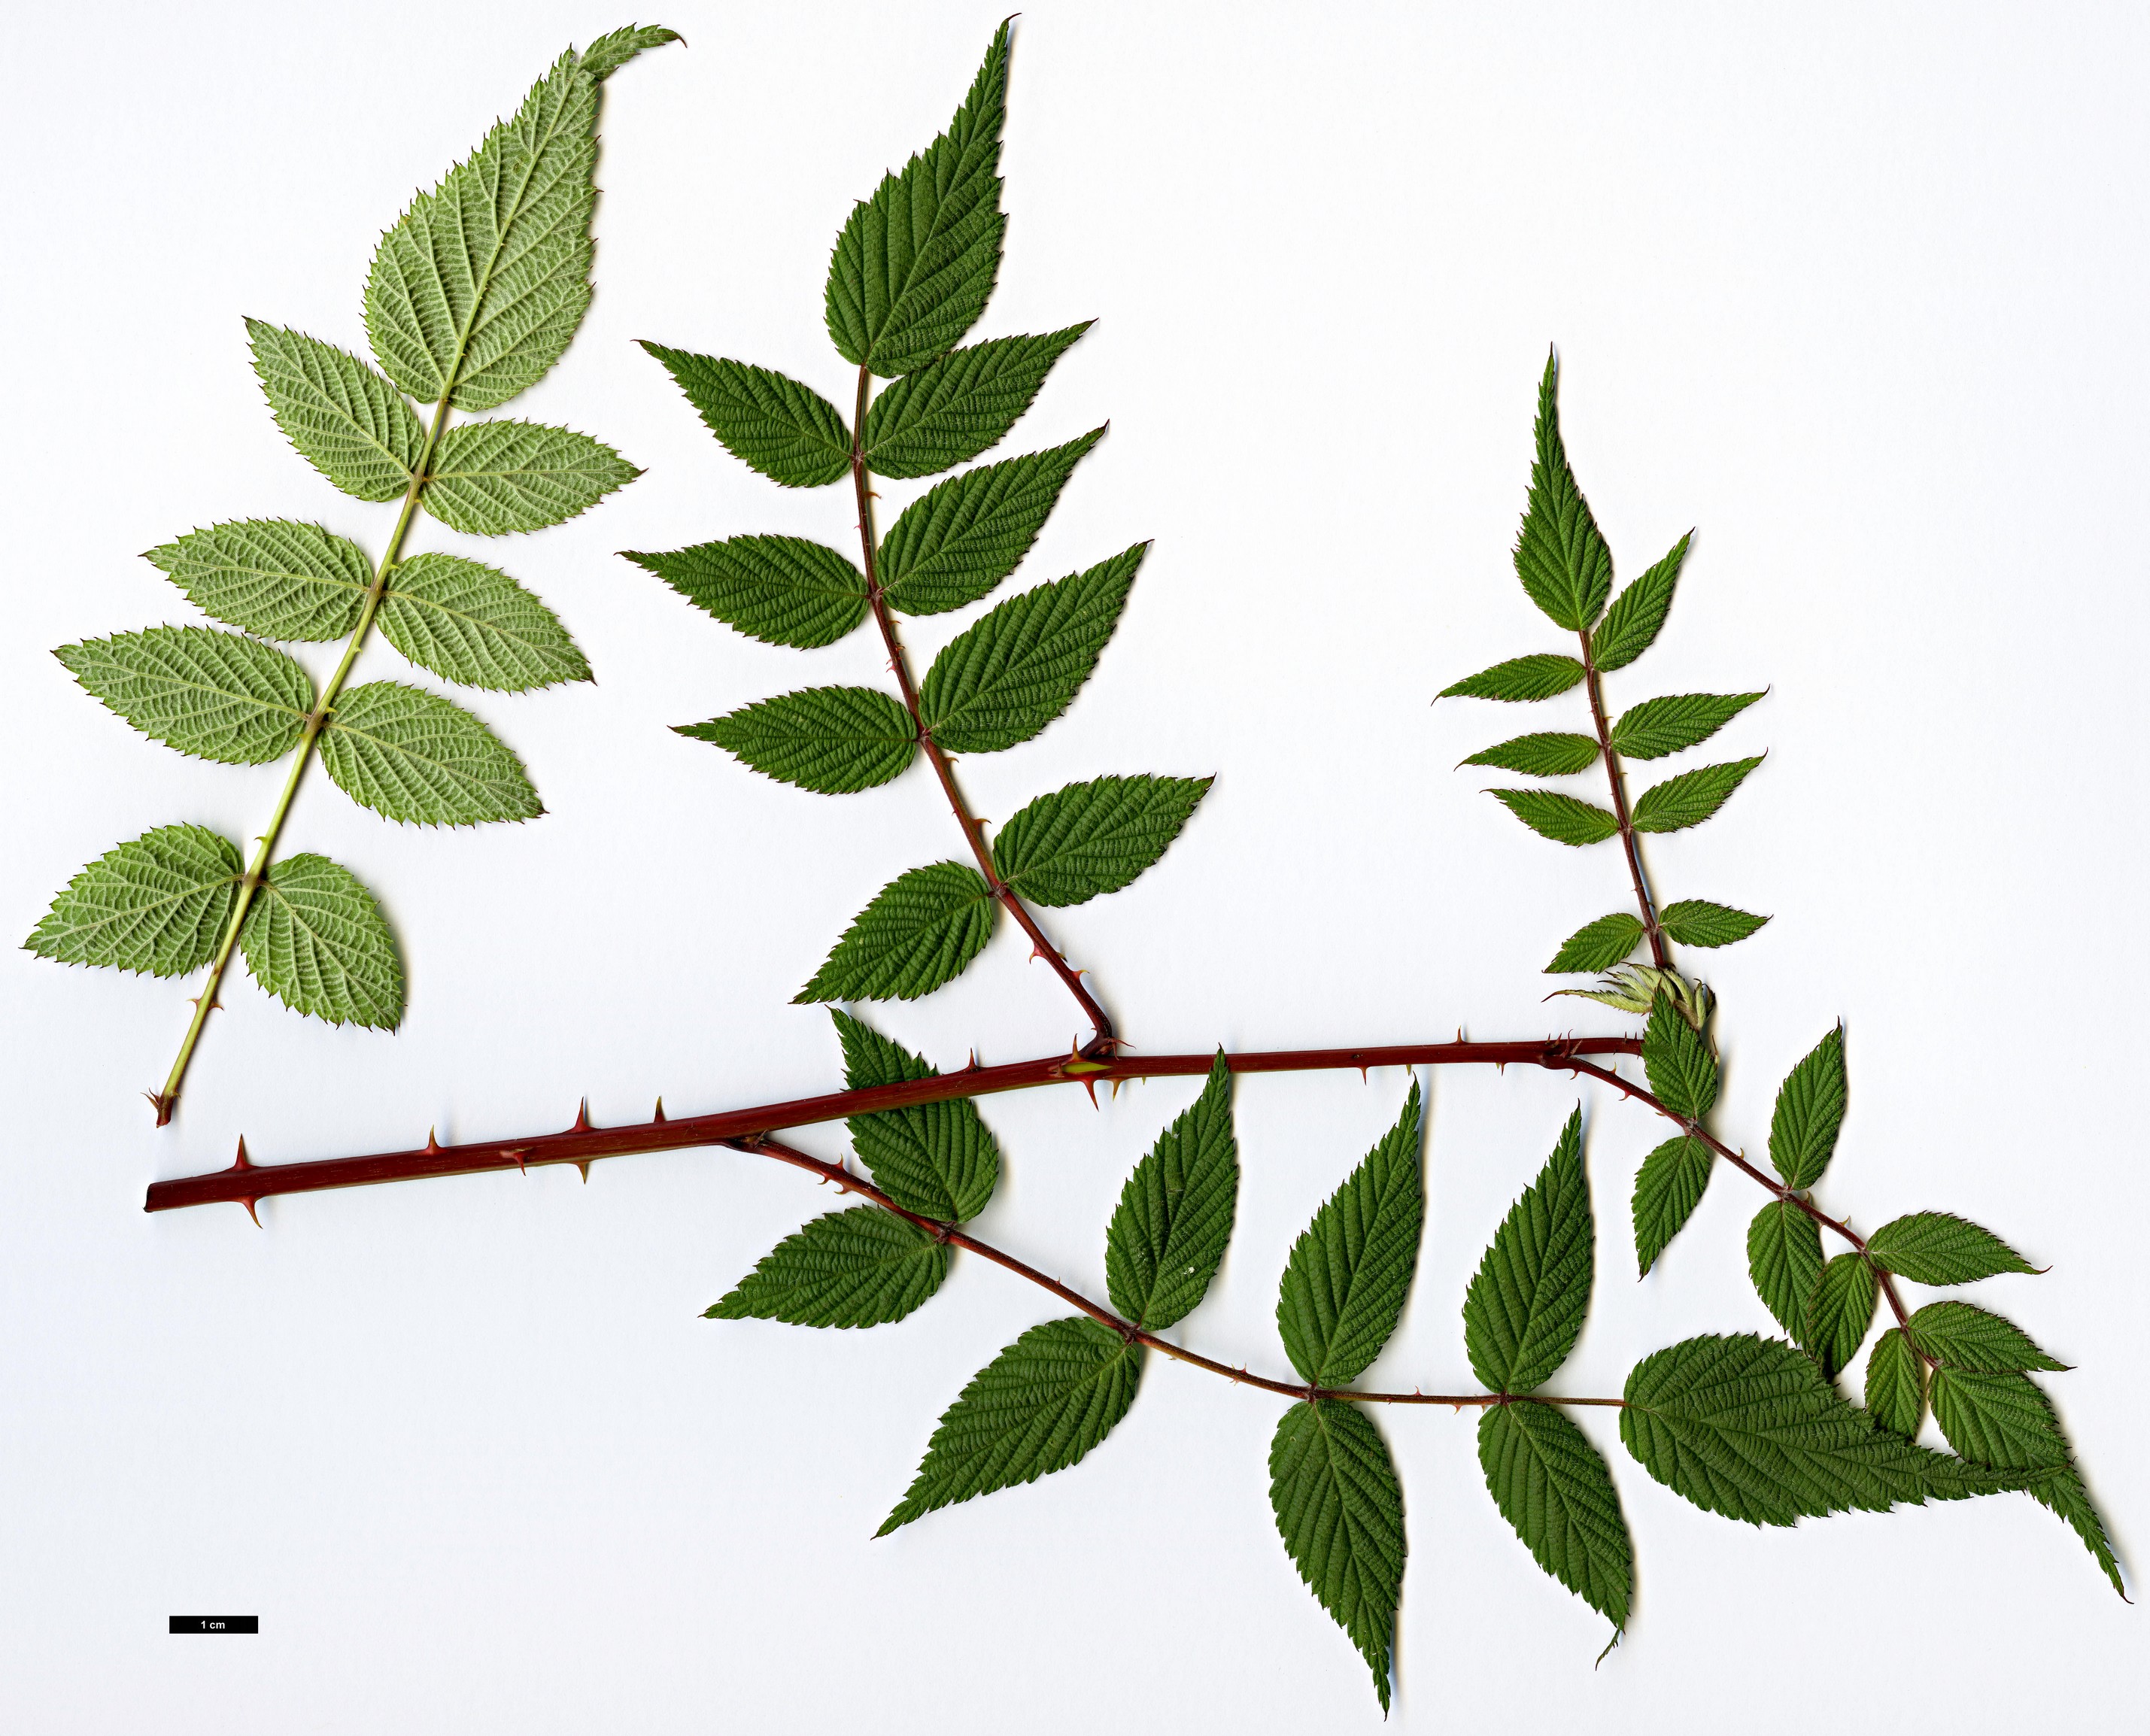 High resolution image: Family: Rosaceae - Genus: Rubus - Taxon: coreanus